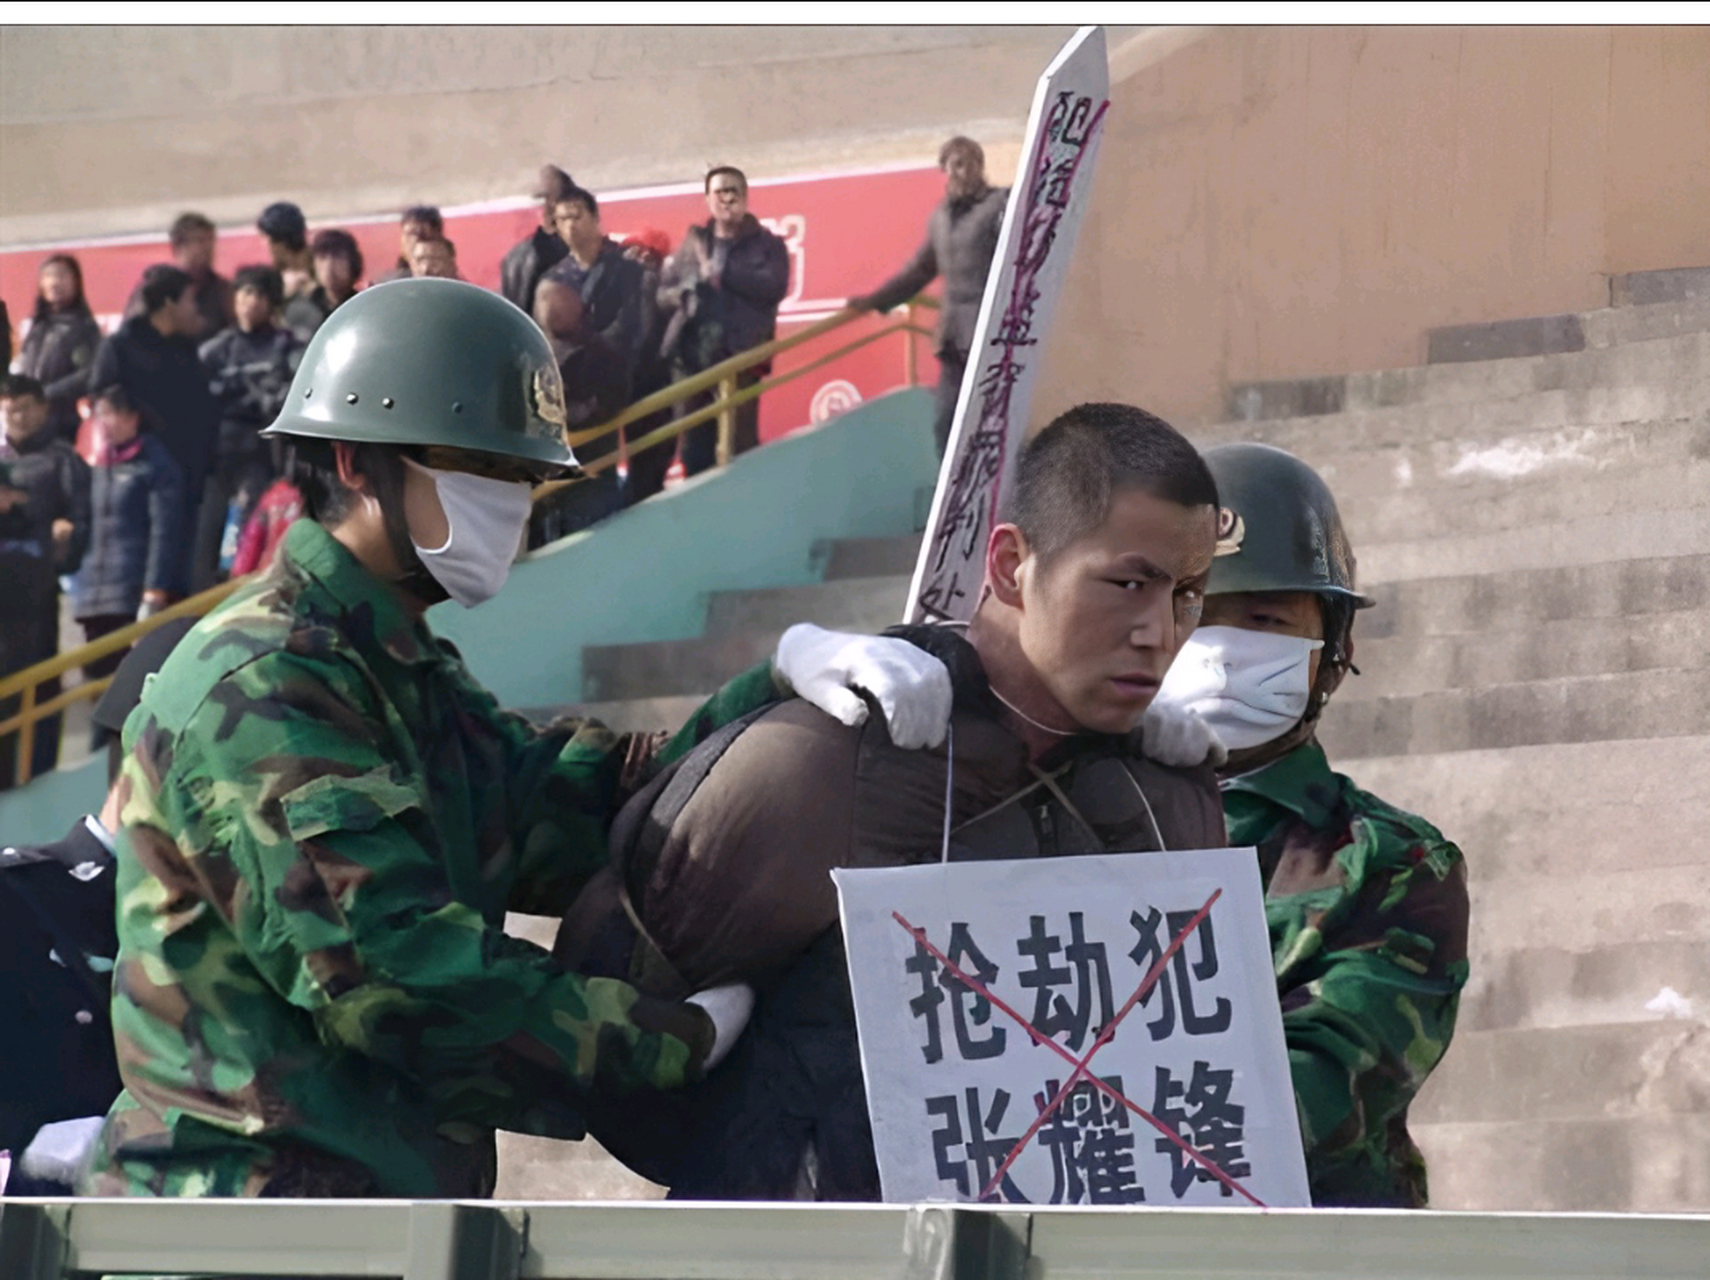 2010年,咸阳公审大会,被判死刑的张耀峰,这个正要被押赴刑场的死刑犯